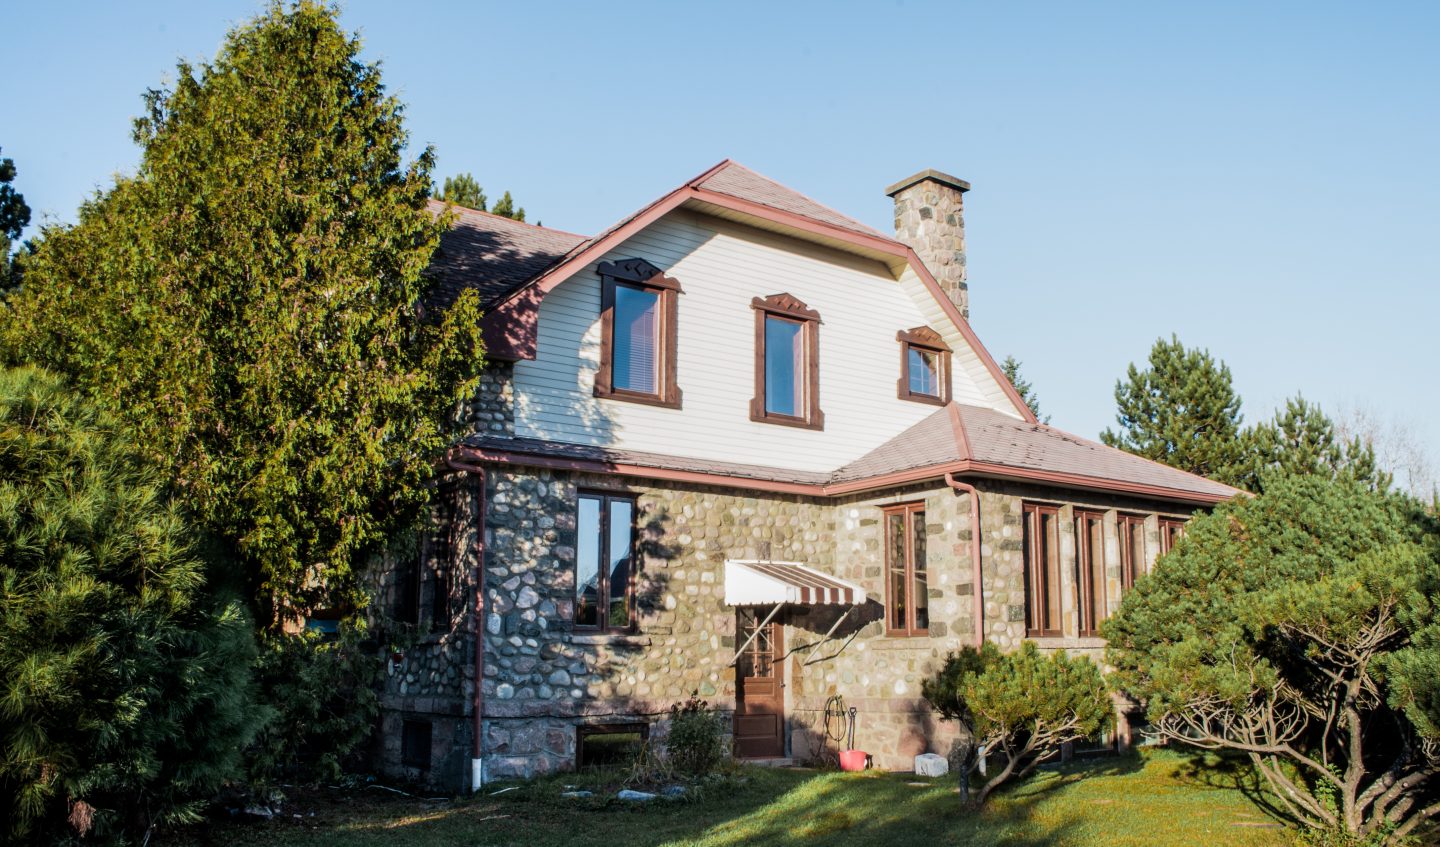 maison de style Cottage anglais construite en 1942 avec murs extérieurs en pierres des champs et déclin, situé à St-Bruno-de-Guigues au Témiscamingue